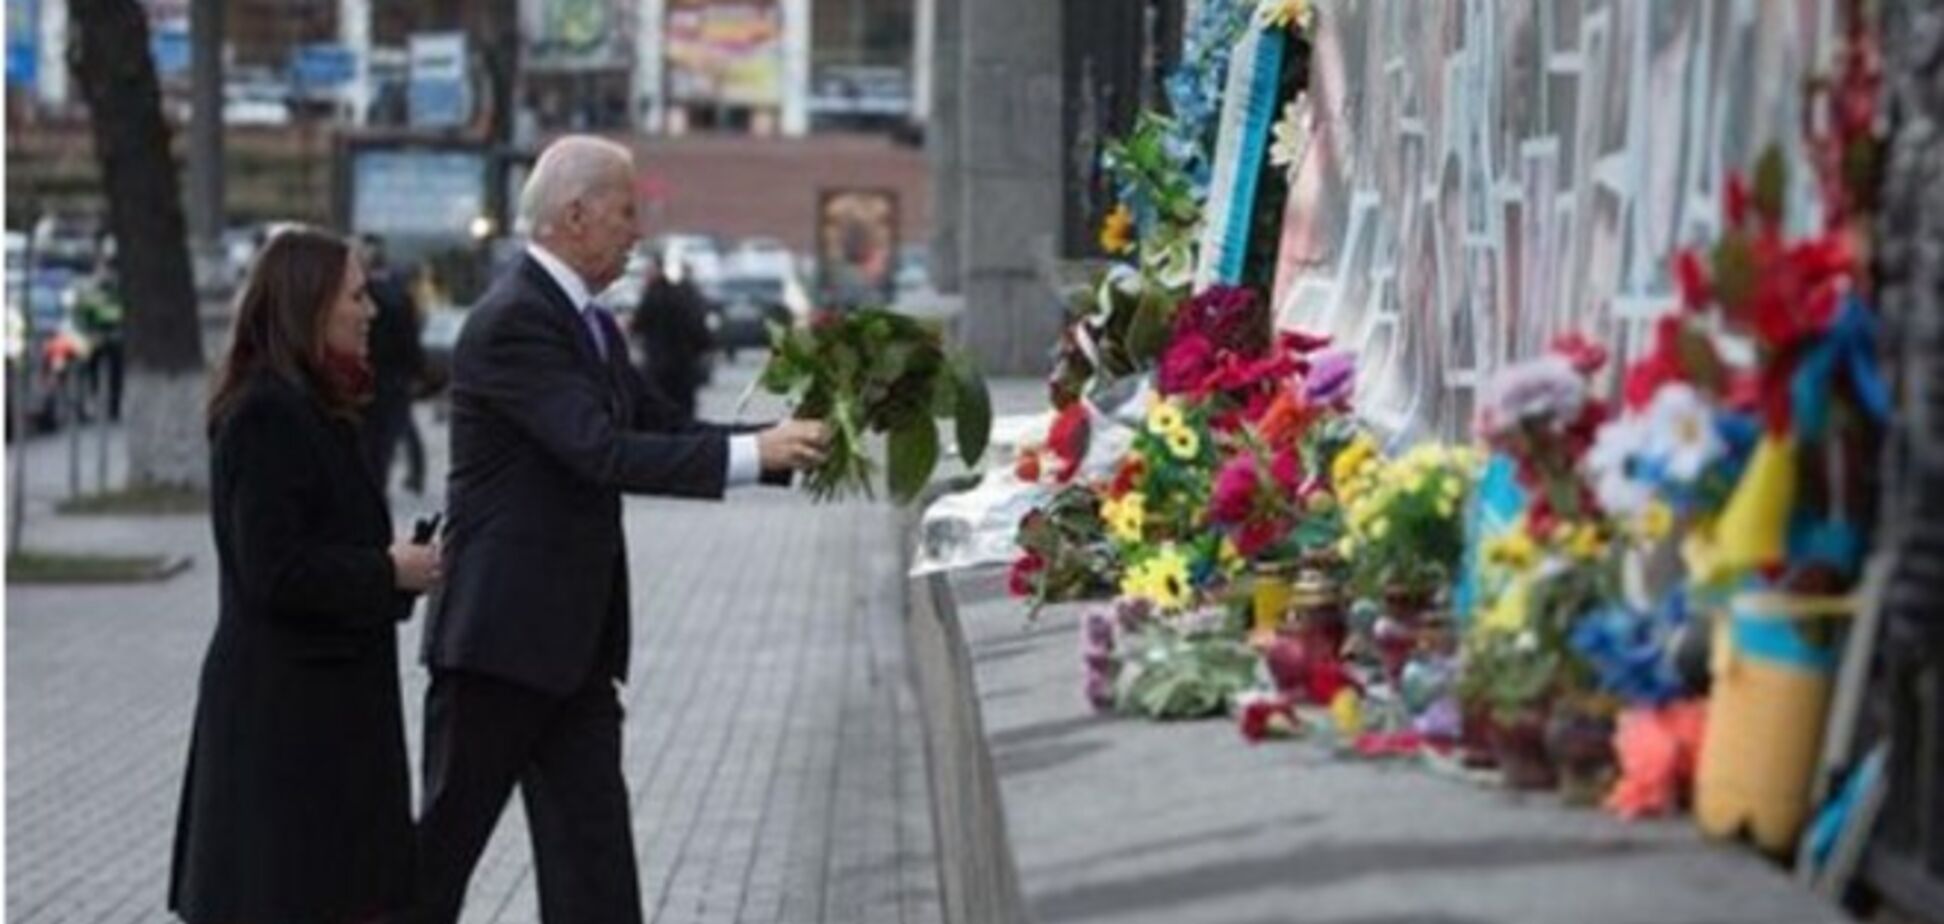 Российские СМИ сочинили фейк об отказе Байдена возложить цветы к памятнику Небесной сотни